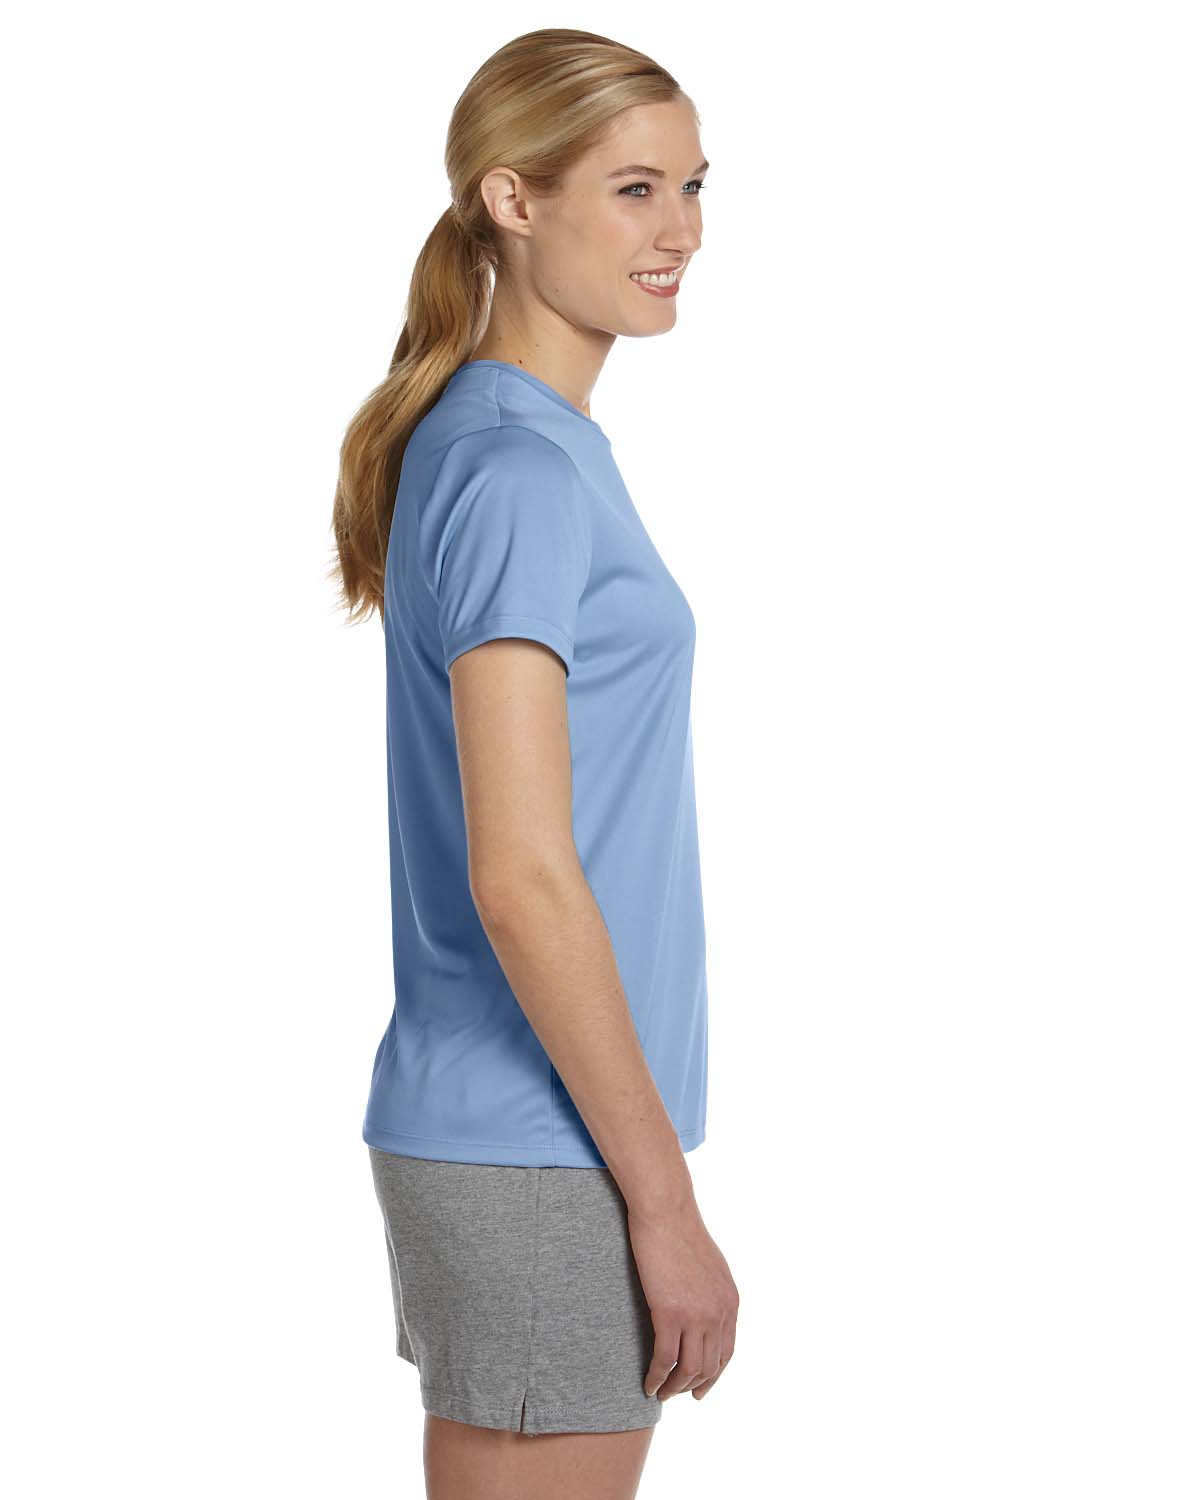 Hanes 4830 Women 4 oz. Cool Dri T-Shirt | GotApparel.com